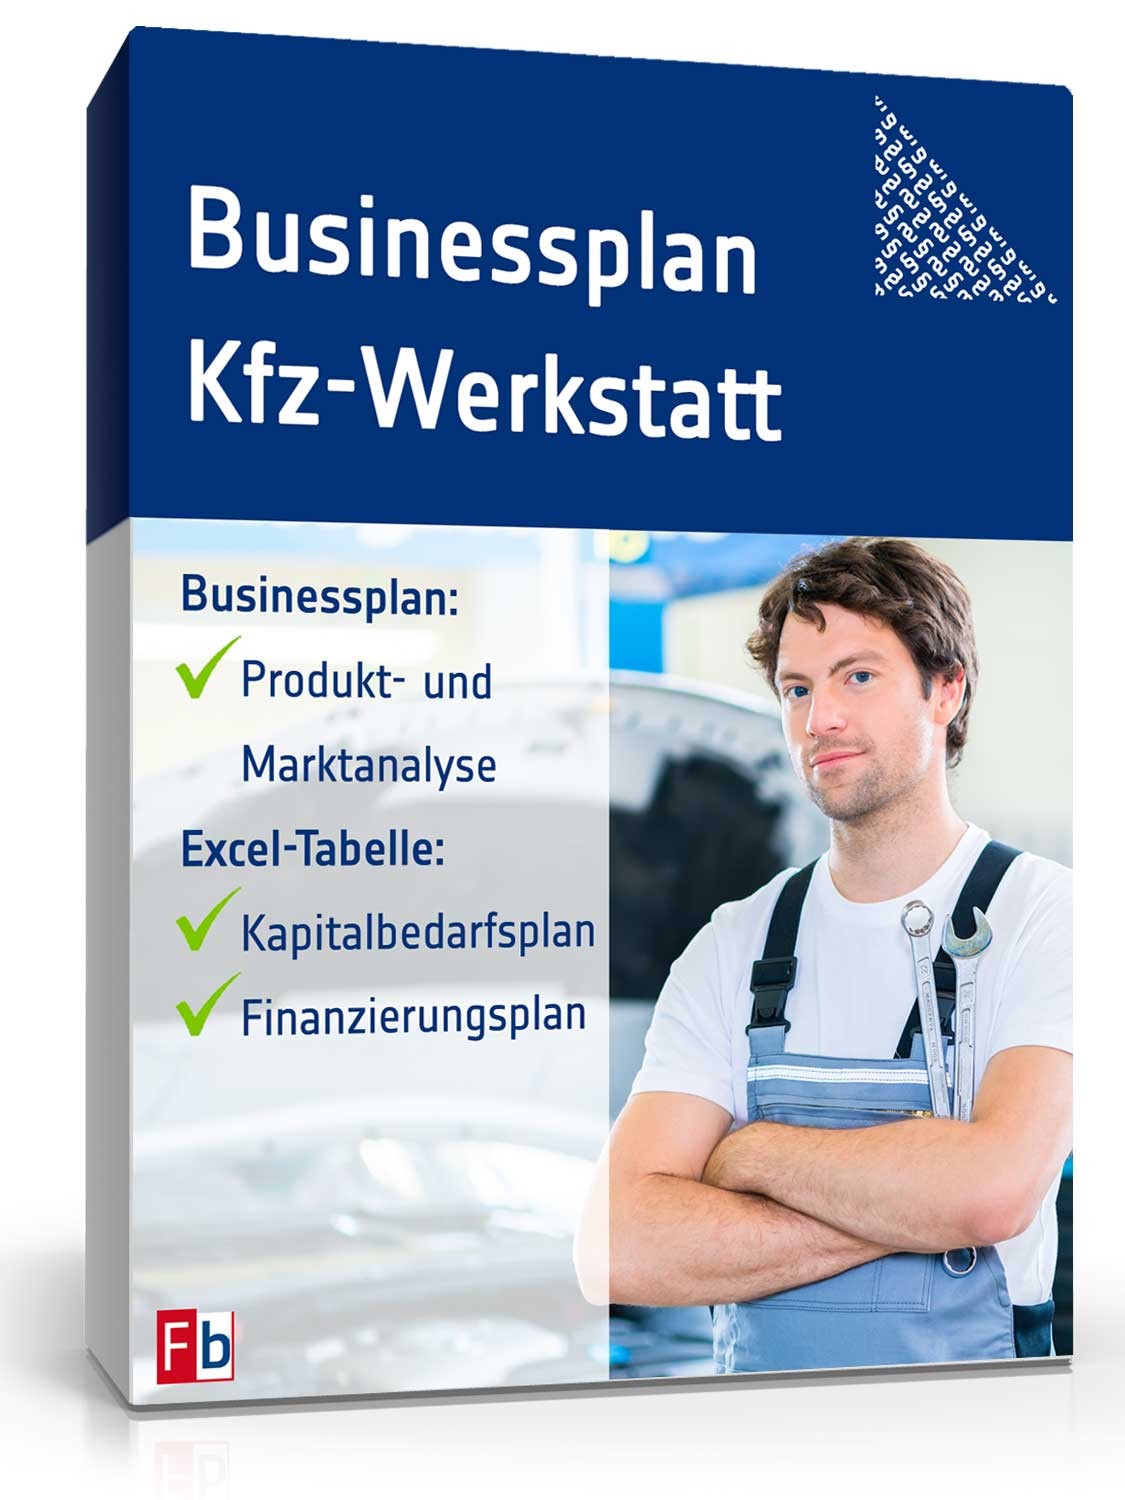 Hauptbild des Produkts: Businessplan Kfz-Werkstatt